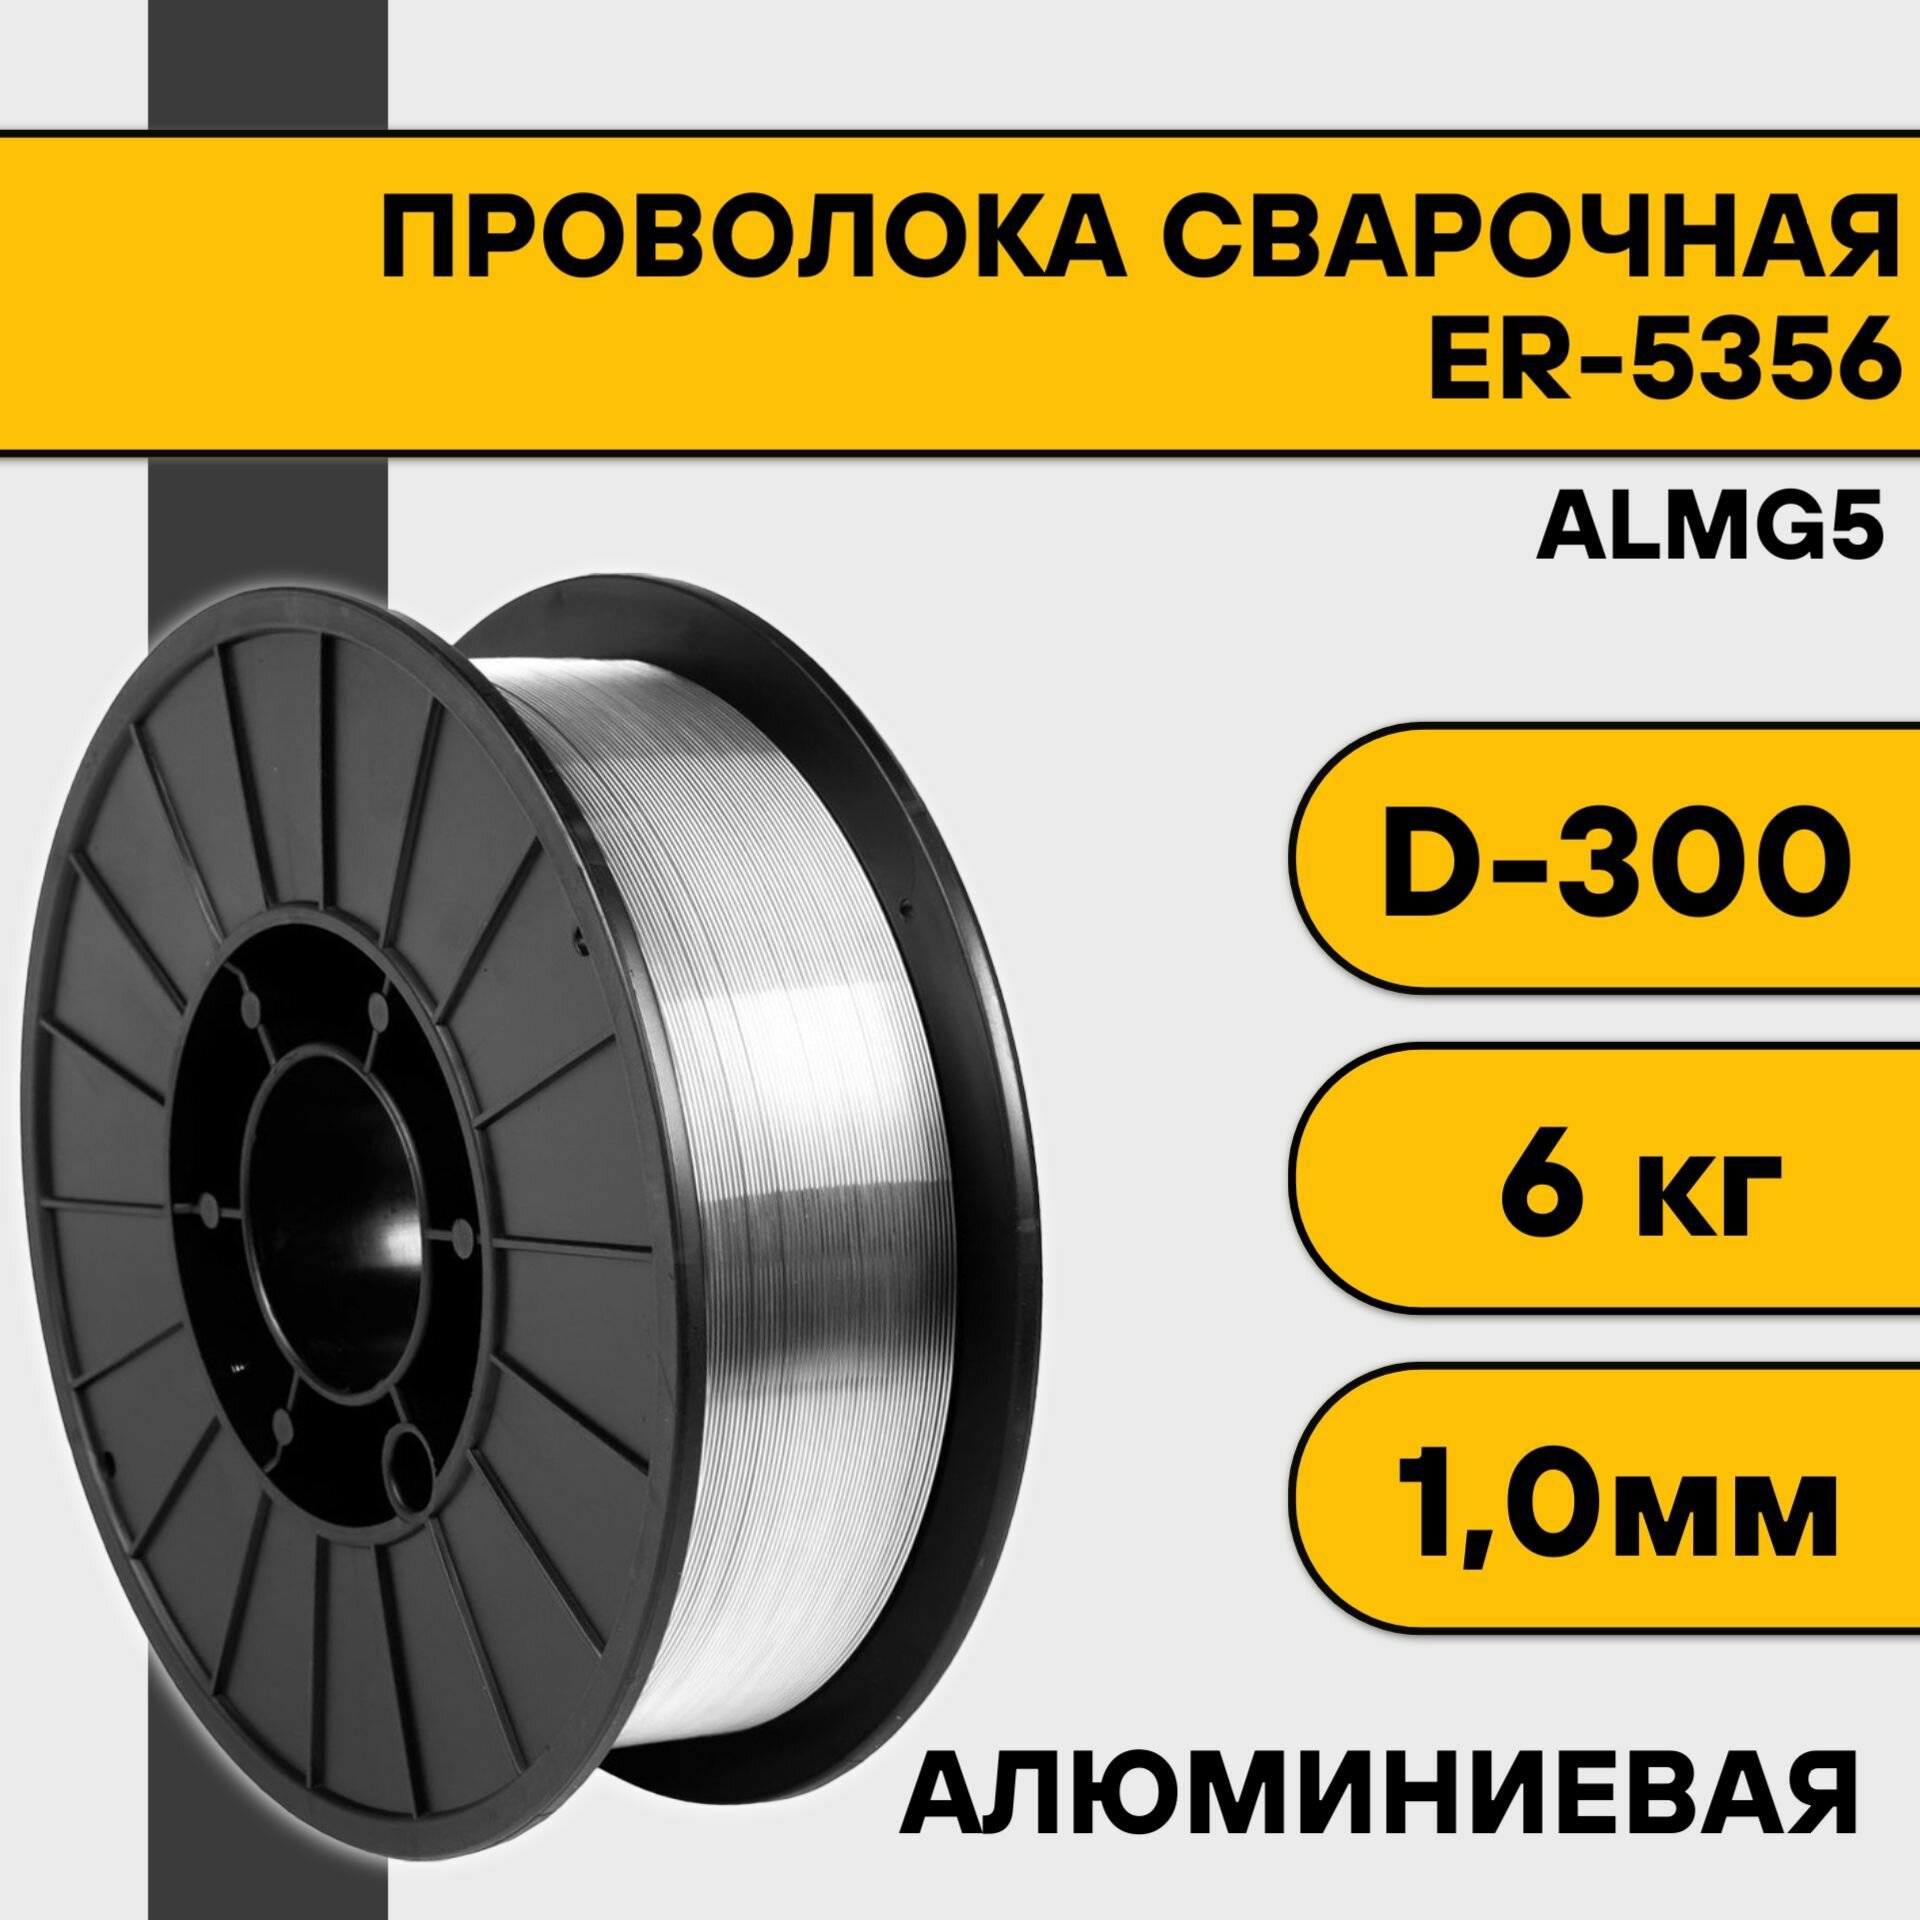 Проволока сварочная ER-5356 (Almg5) ф 08 мм (2 кг) D200